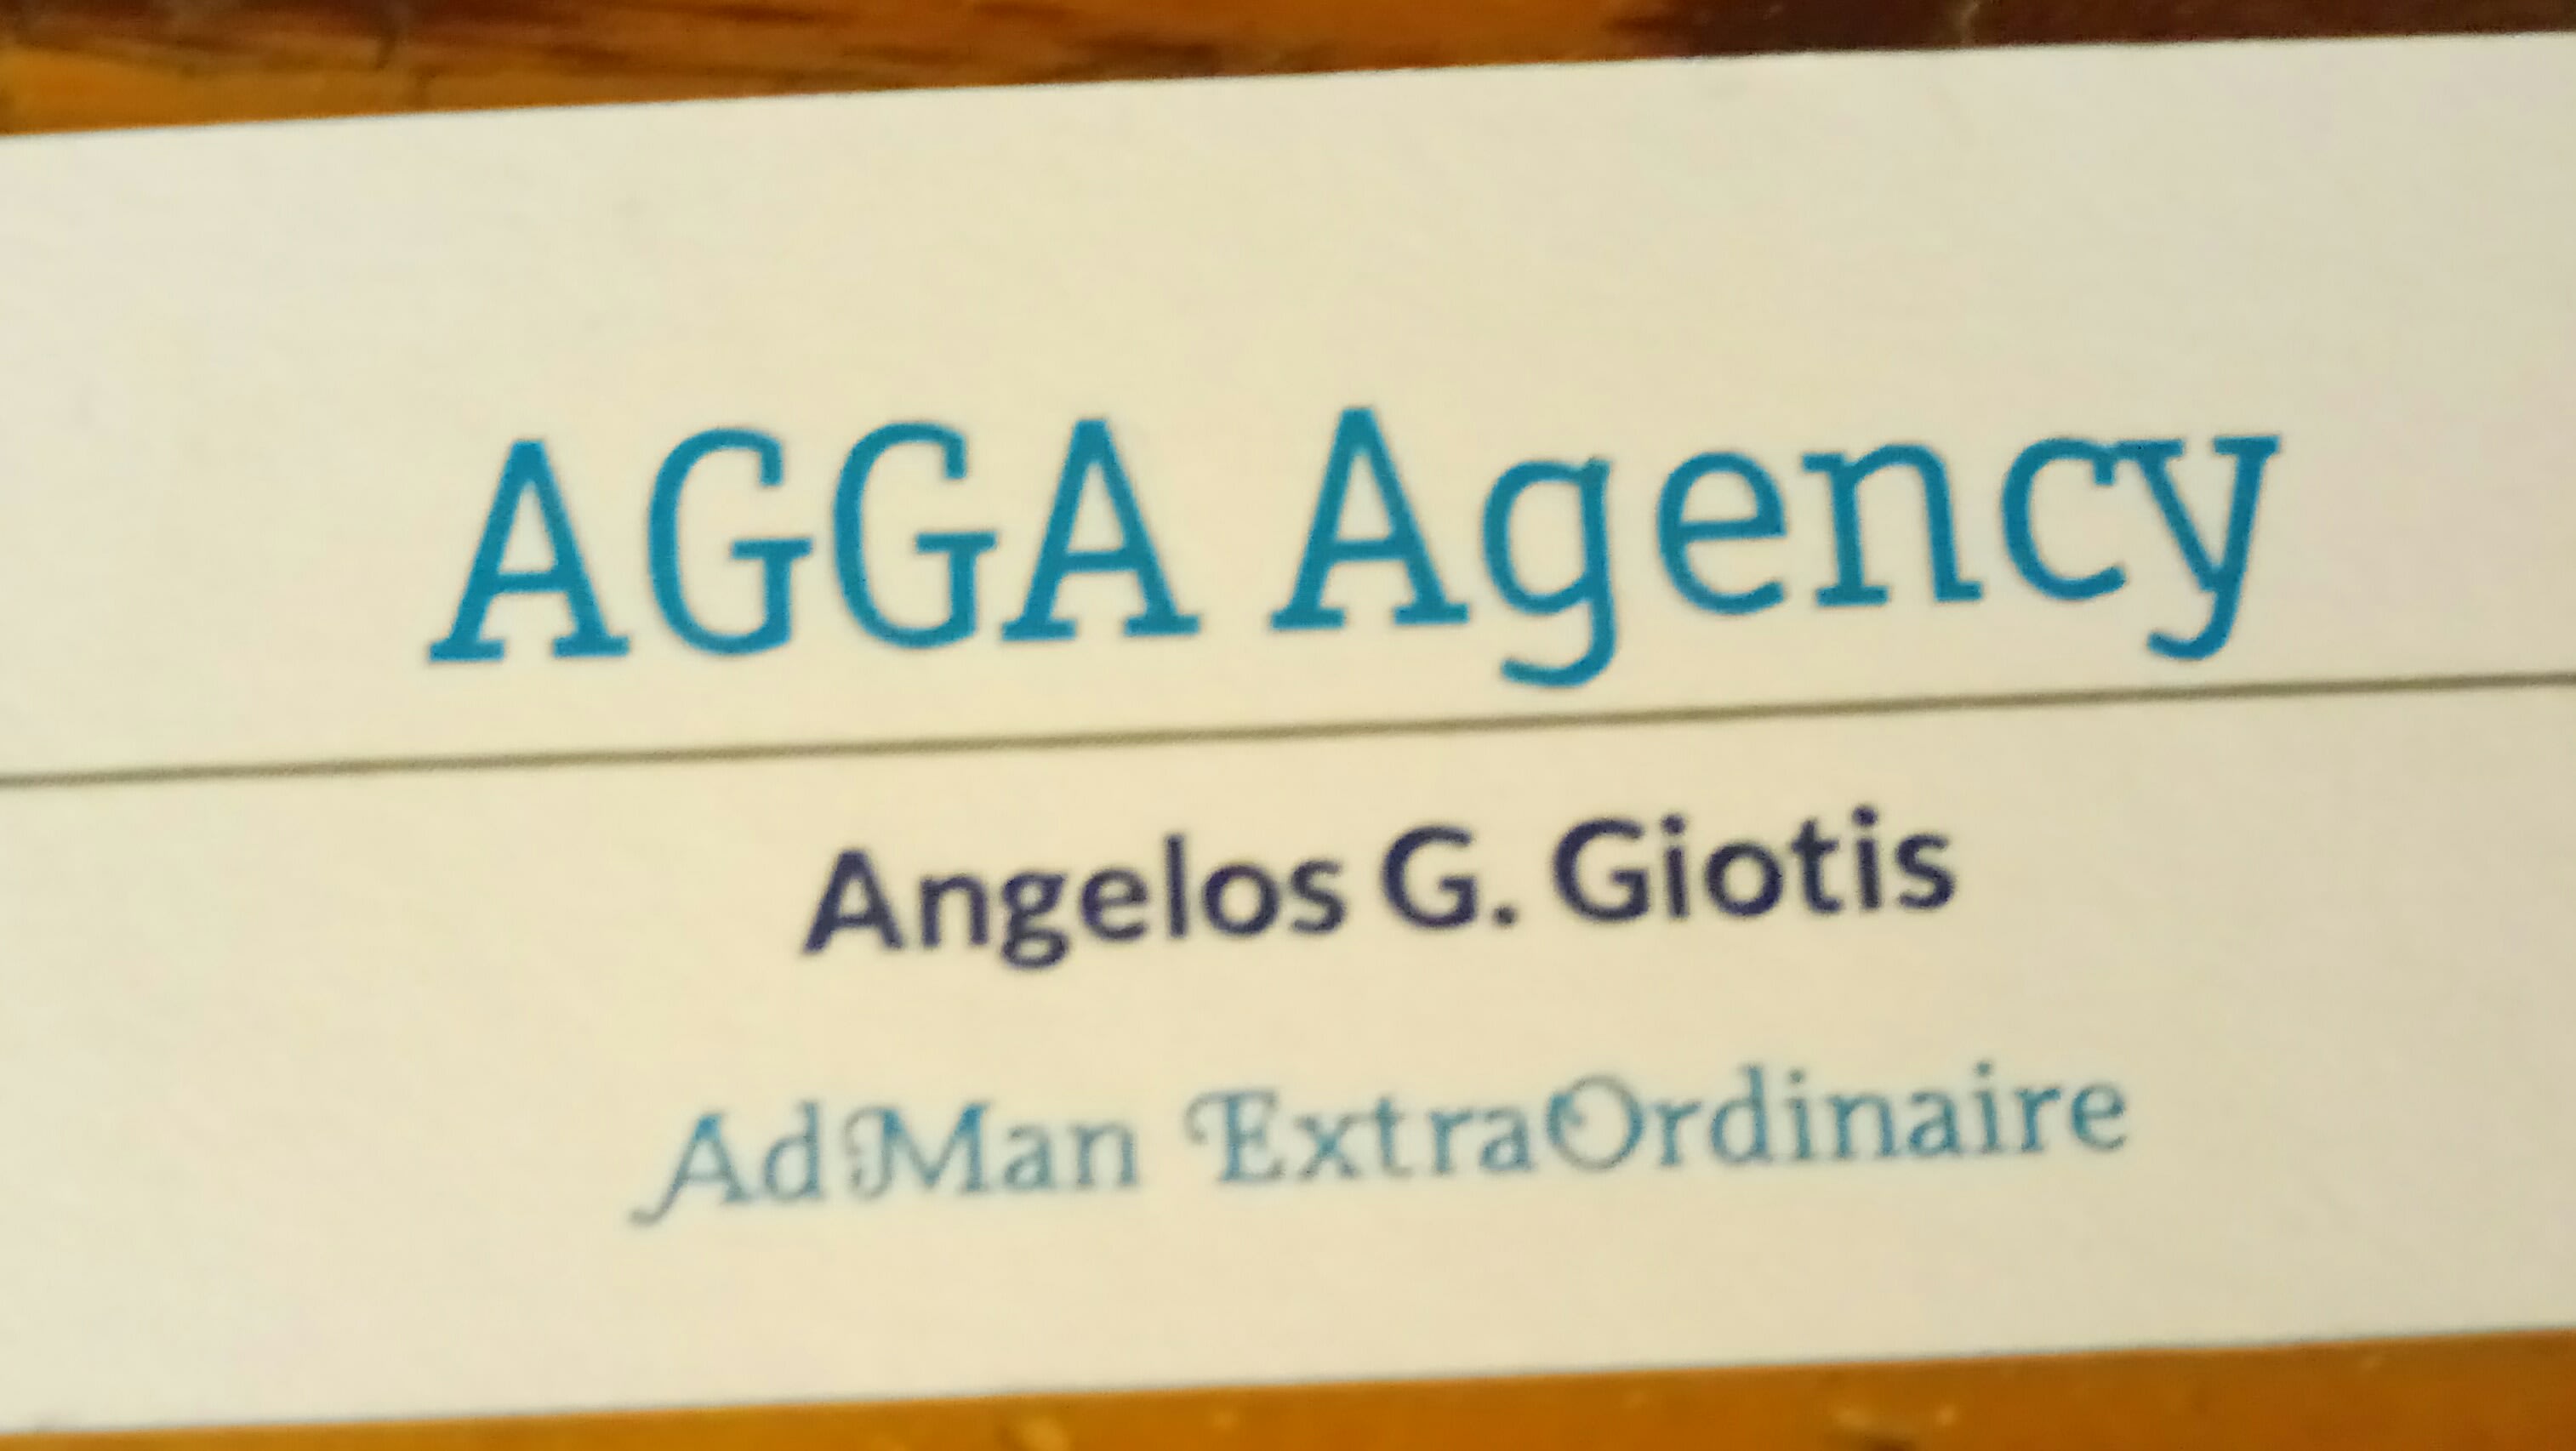 Agga Agency